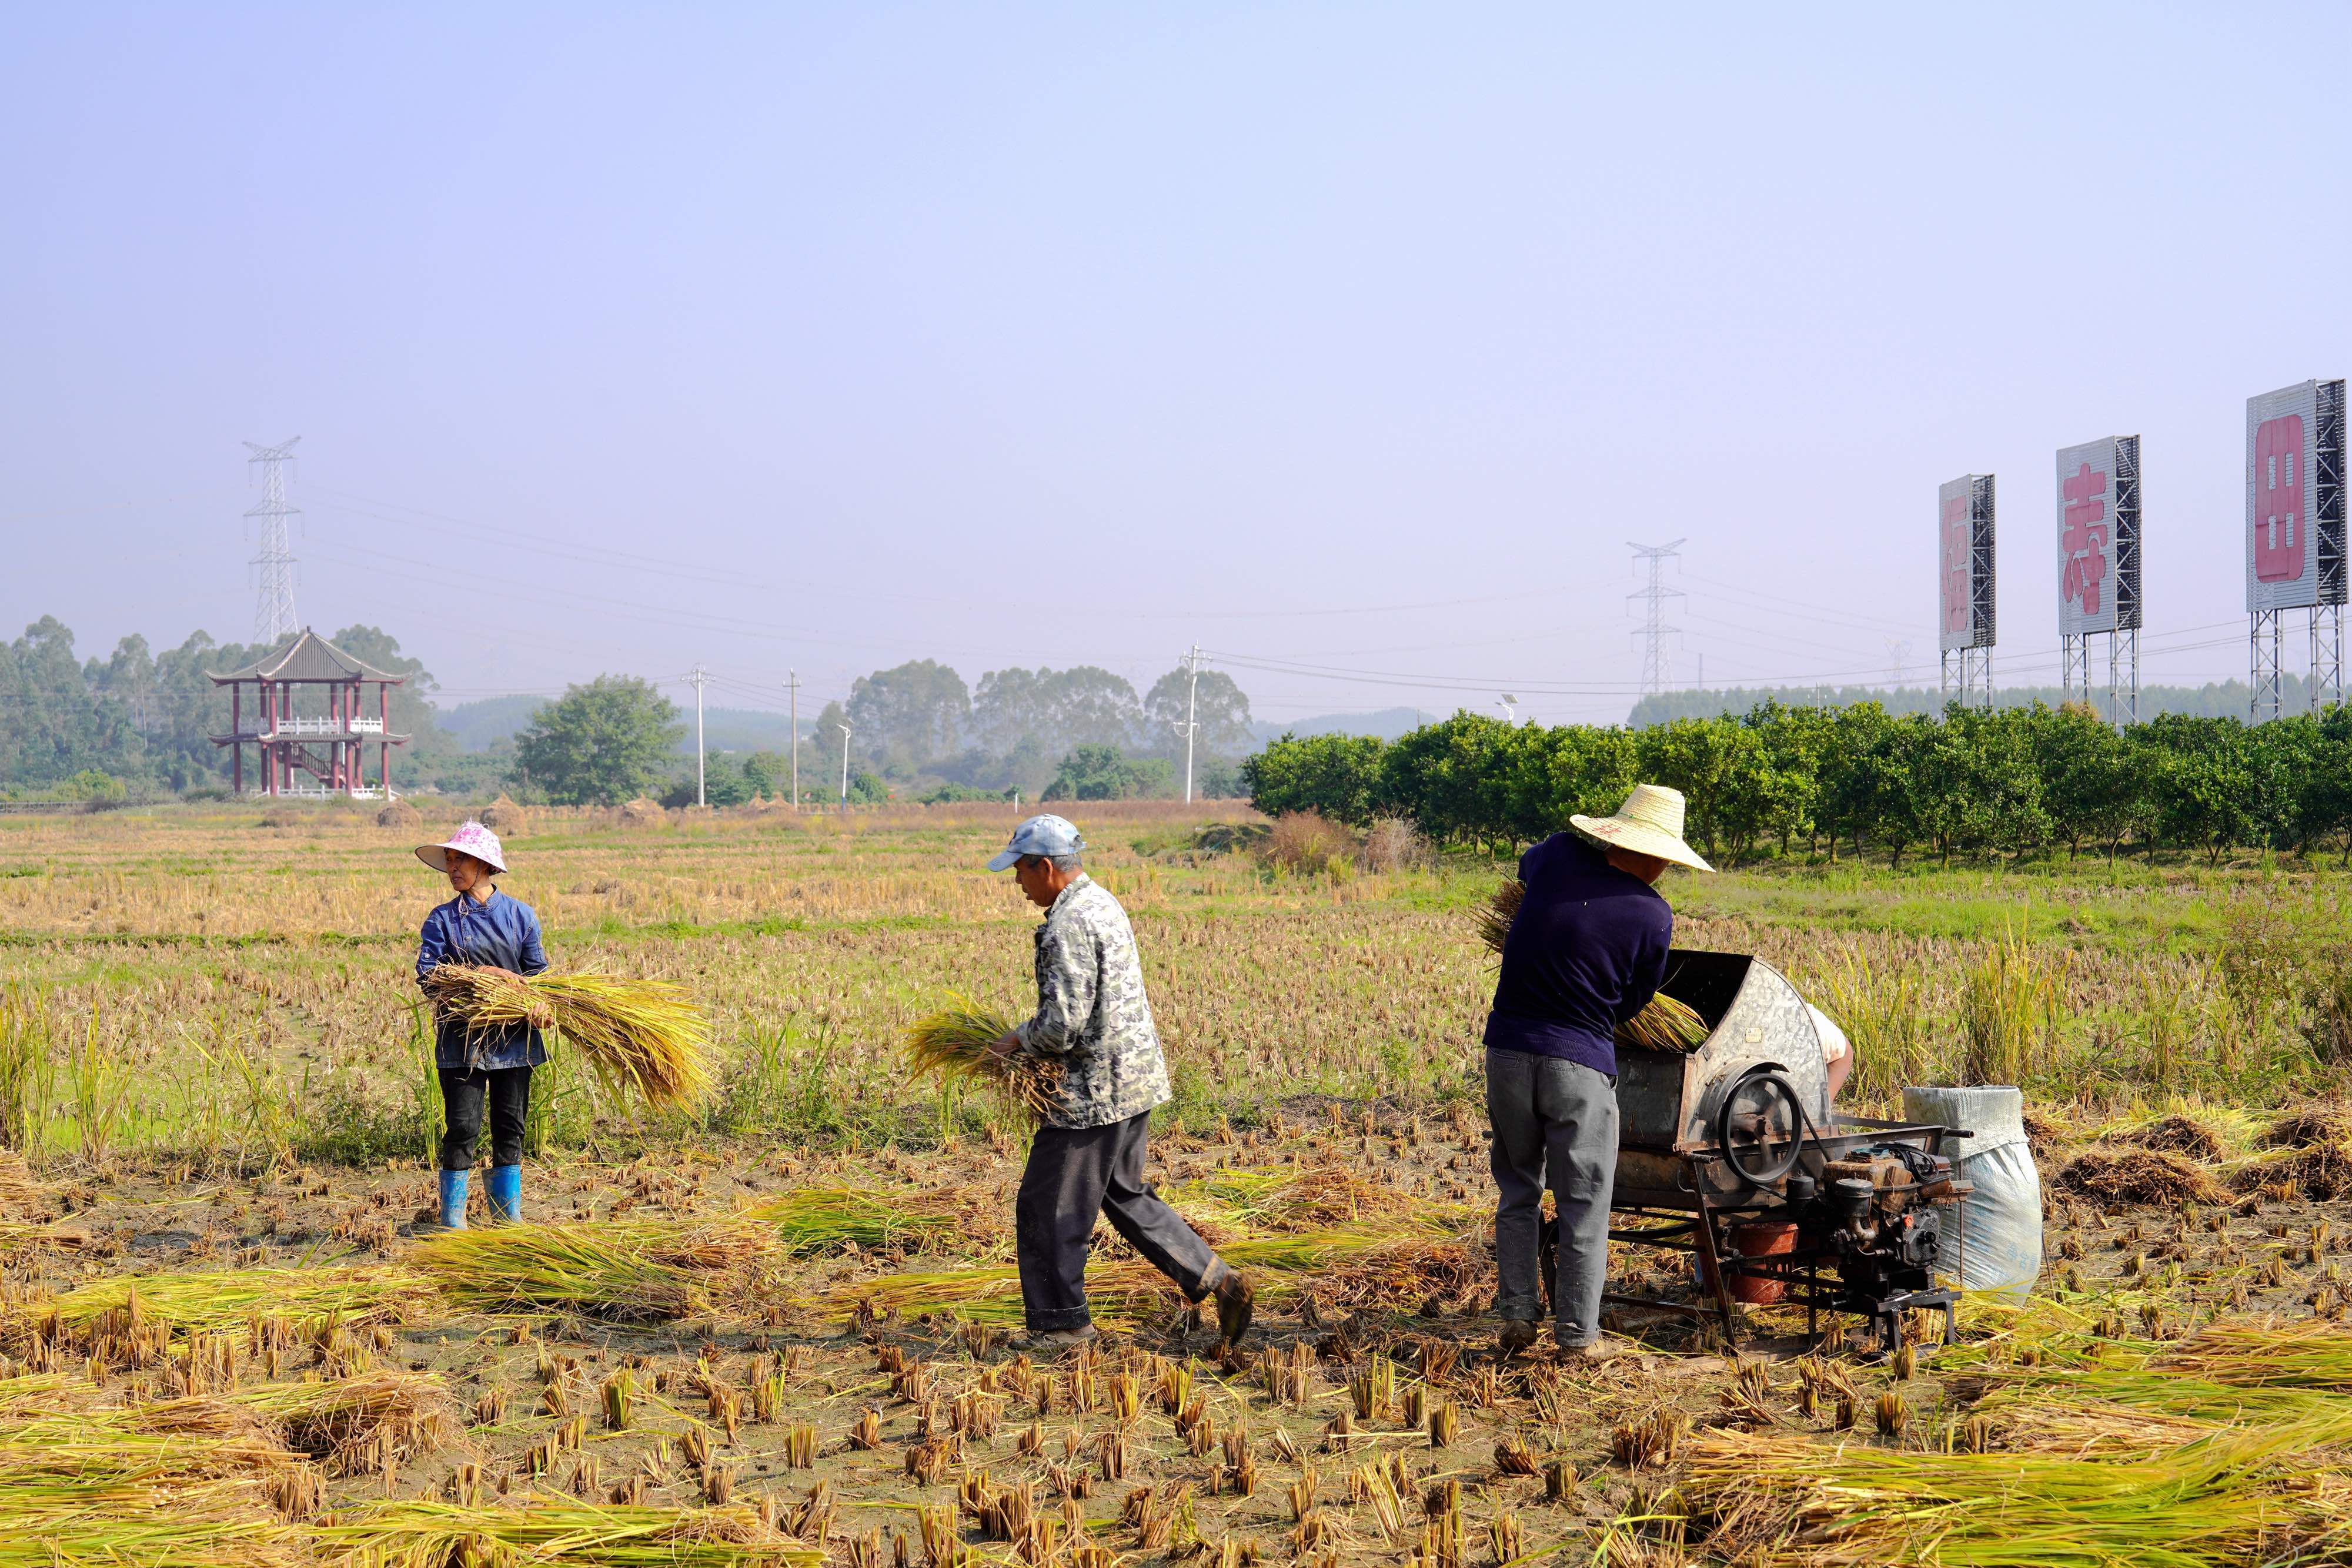 农户正在进行晚稻收割处理。记者 甘艳霞 摄.jpeg